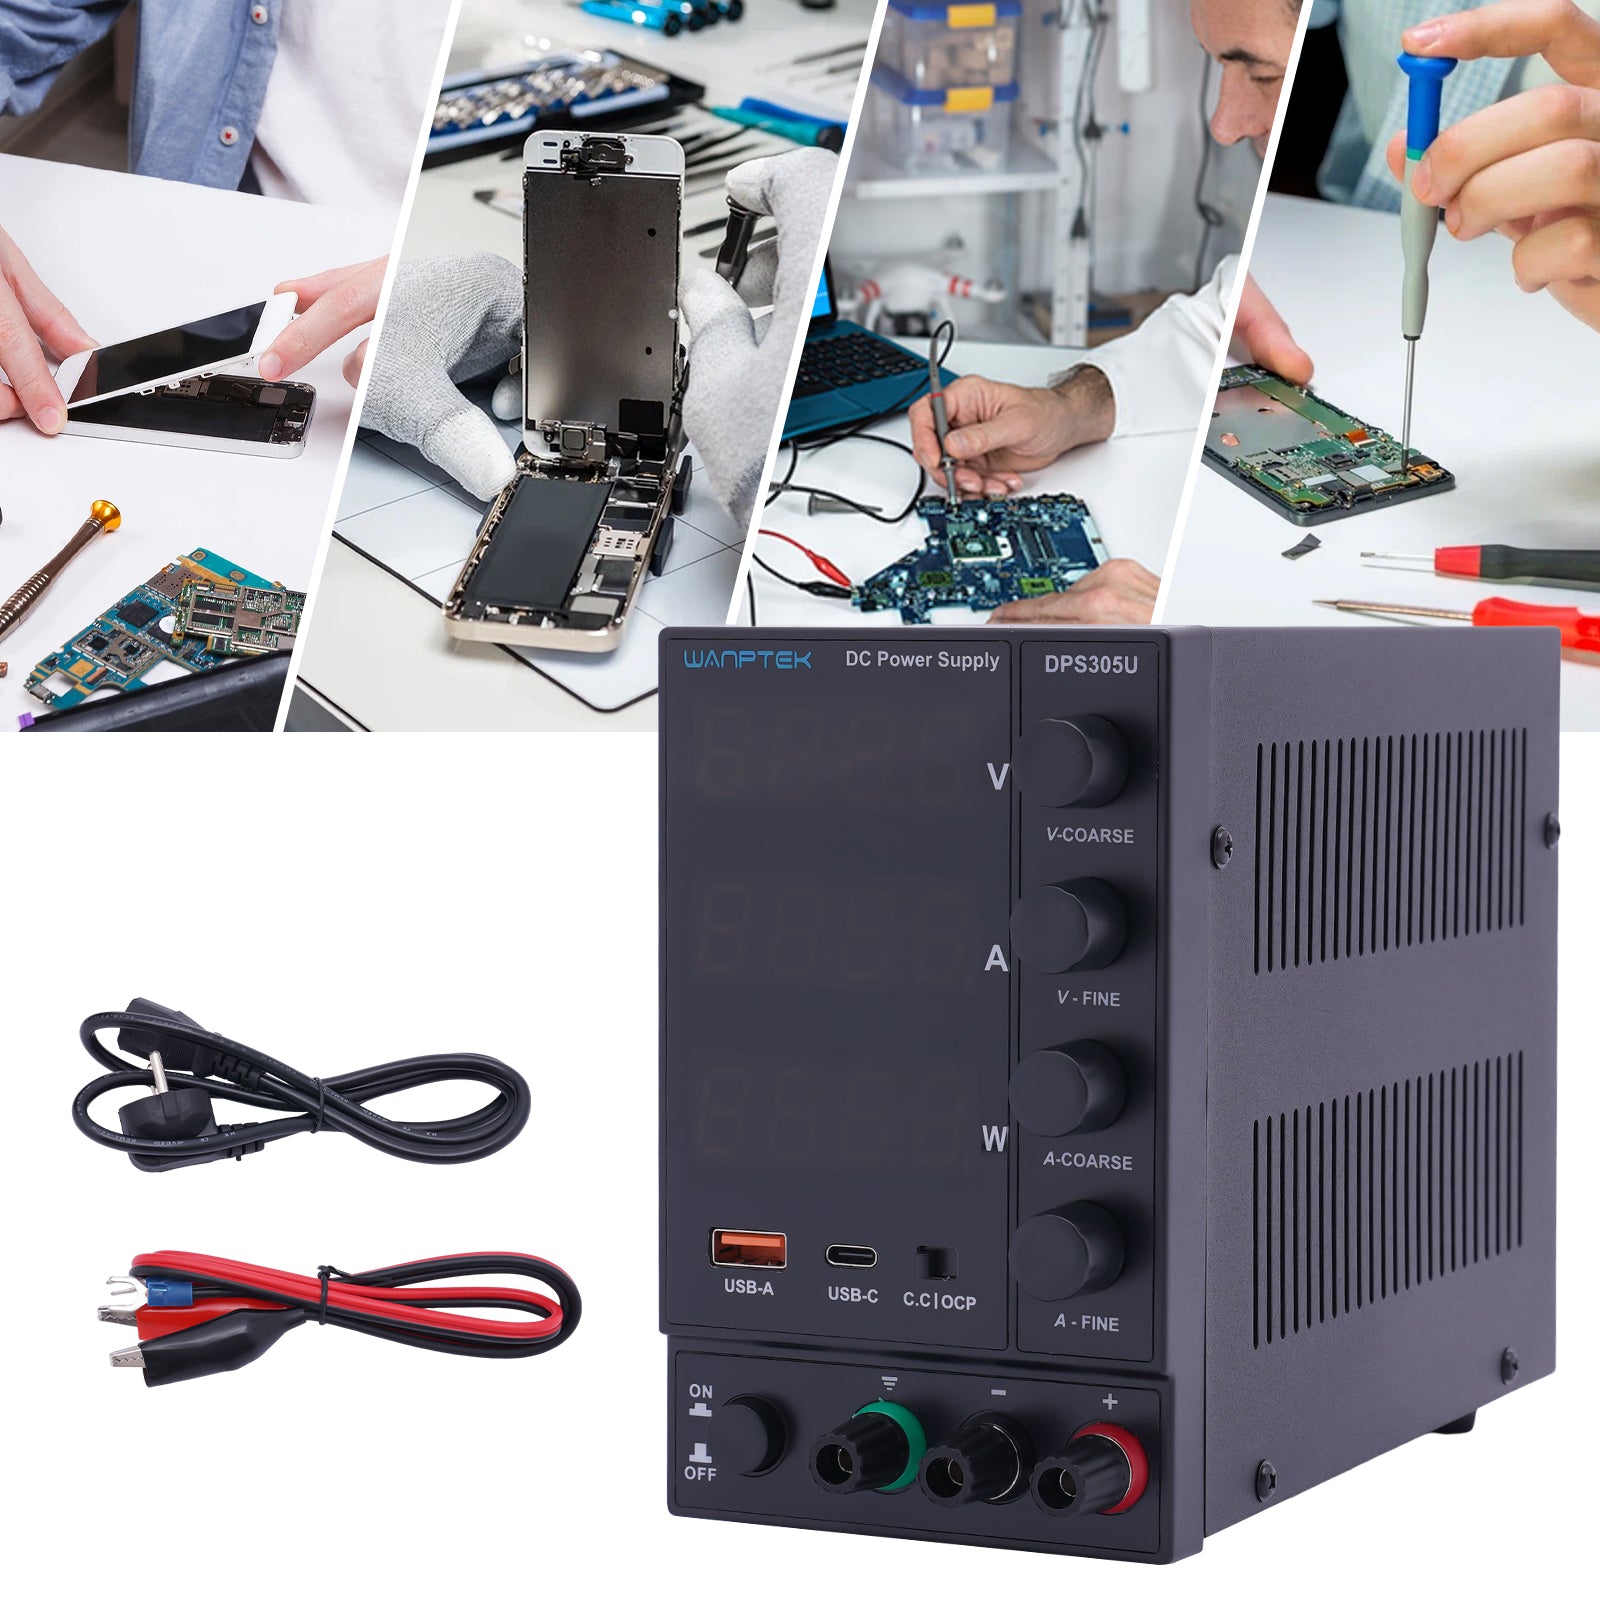 DC Regelbar Labornetzteil-Labornetzgerät Strommessgeräte Digitalanzeige Überlast- Kurzschlussfest mit Stecker